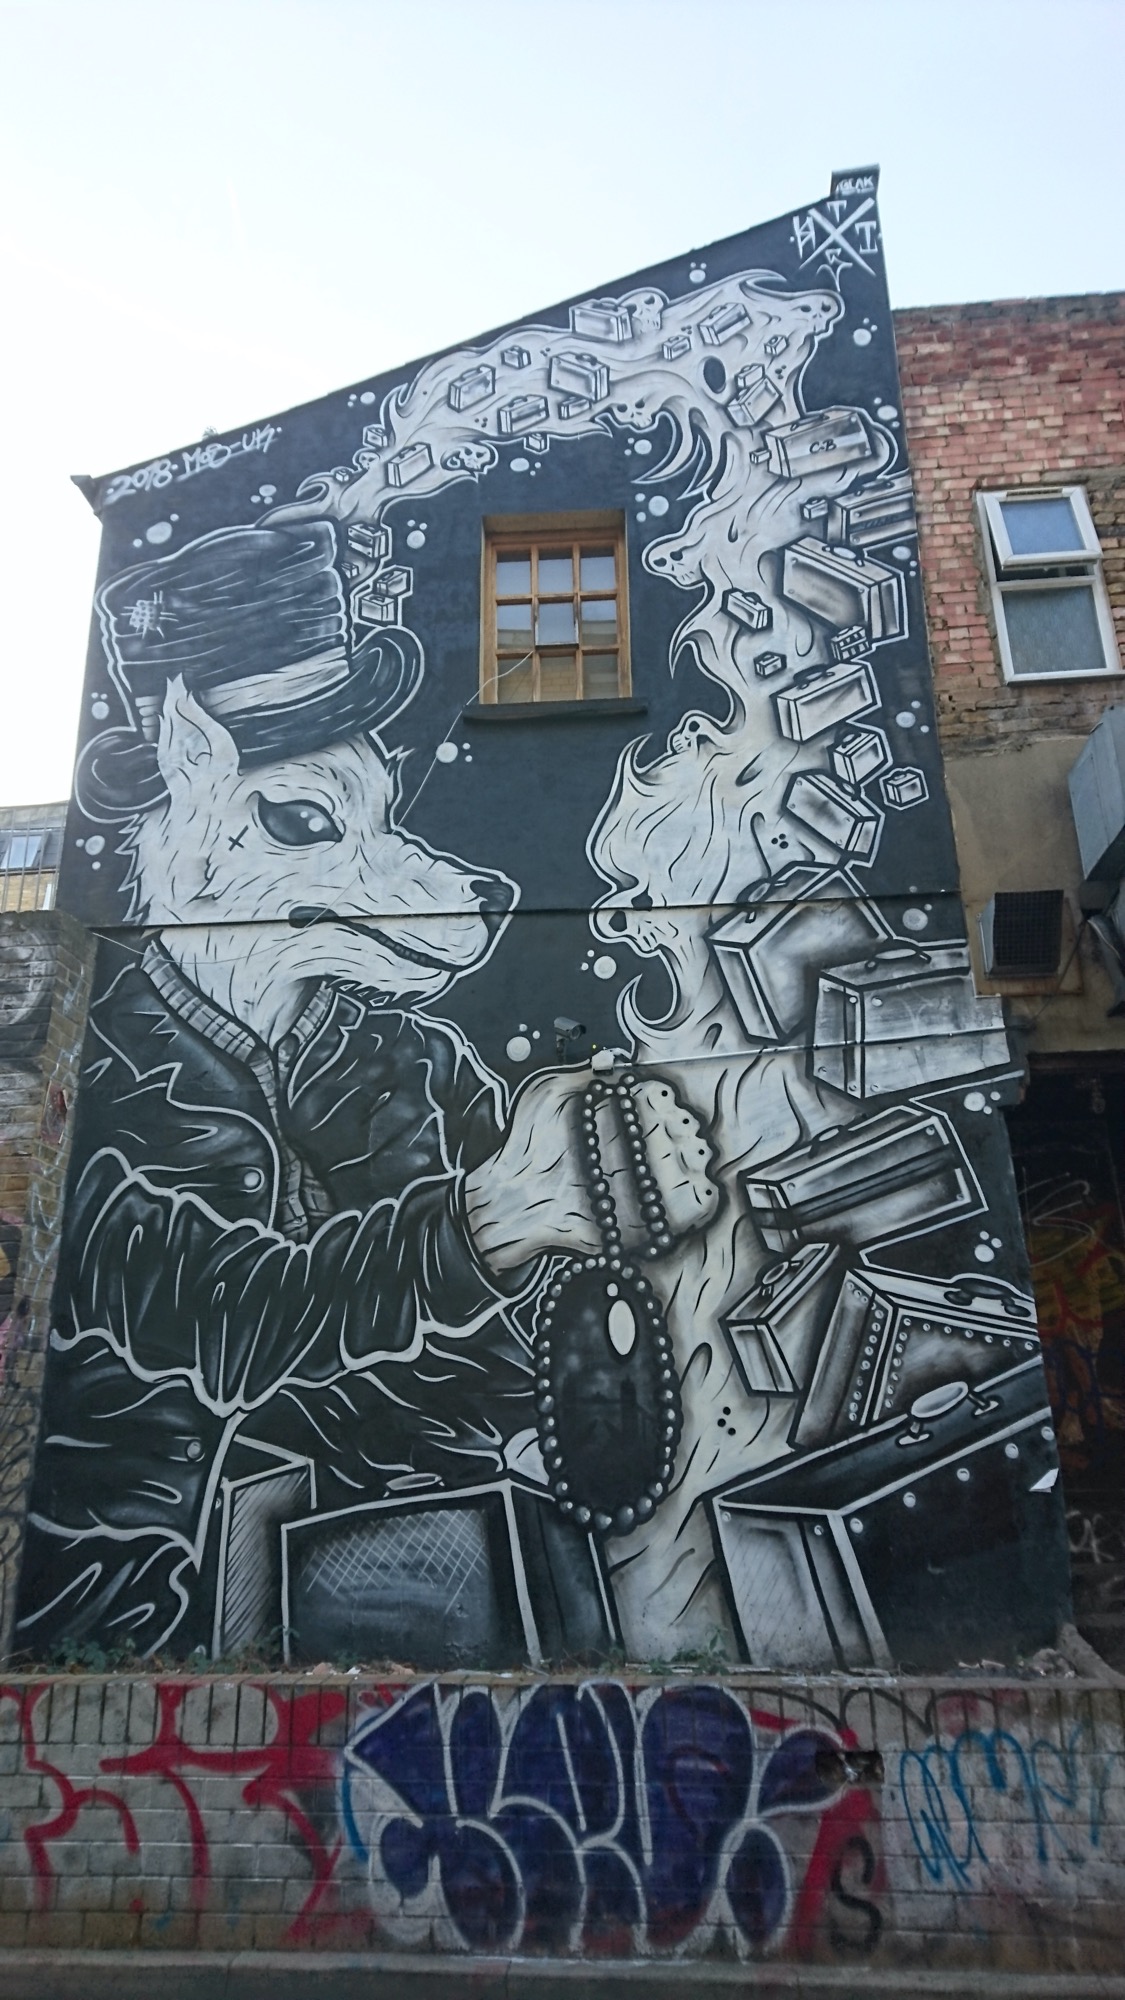 Graffiti 759 The Dog and Money capturé par Chloé_rhe à London United Kingdom